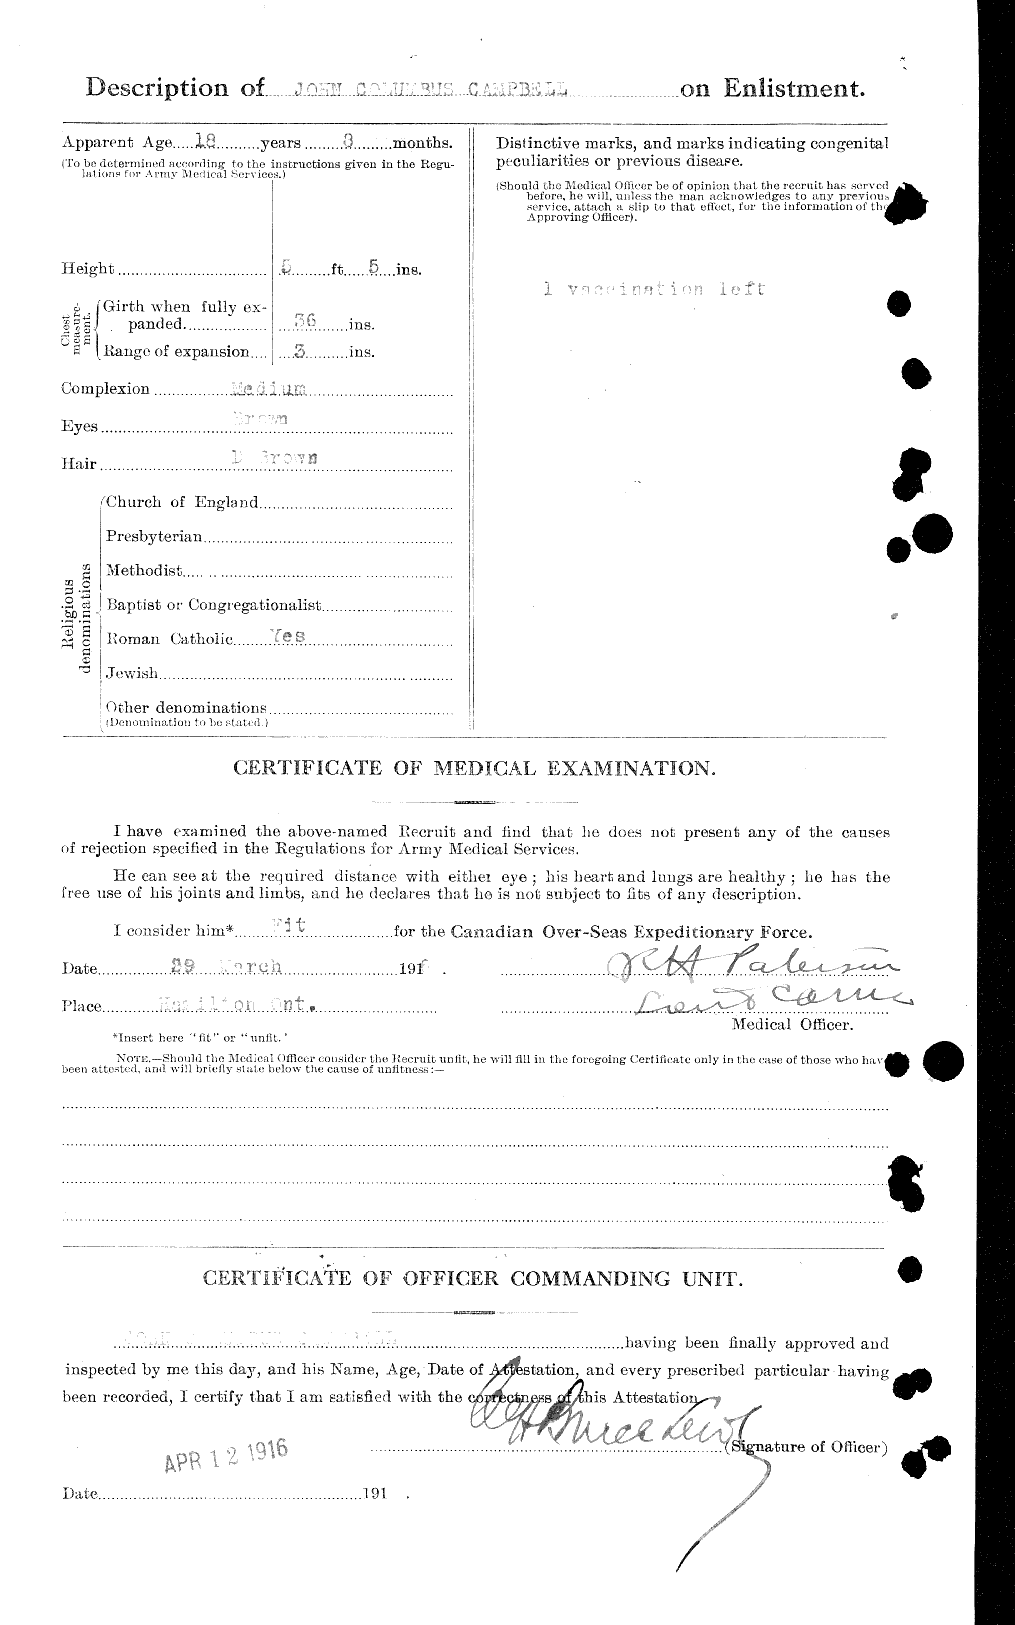 Dossiers du Personnel de la Première Guerre mondiale - CEC 006885b